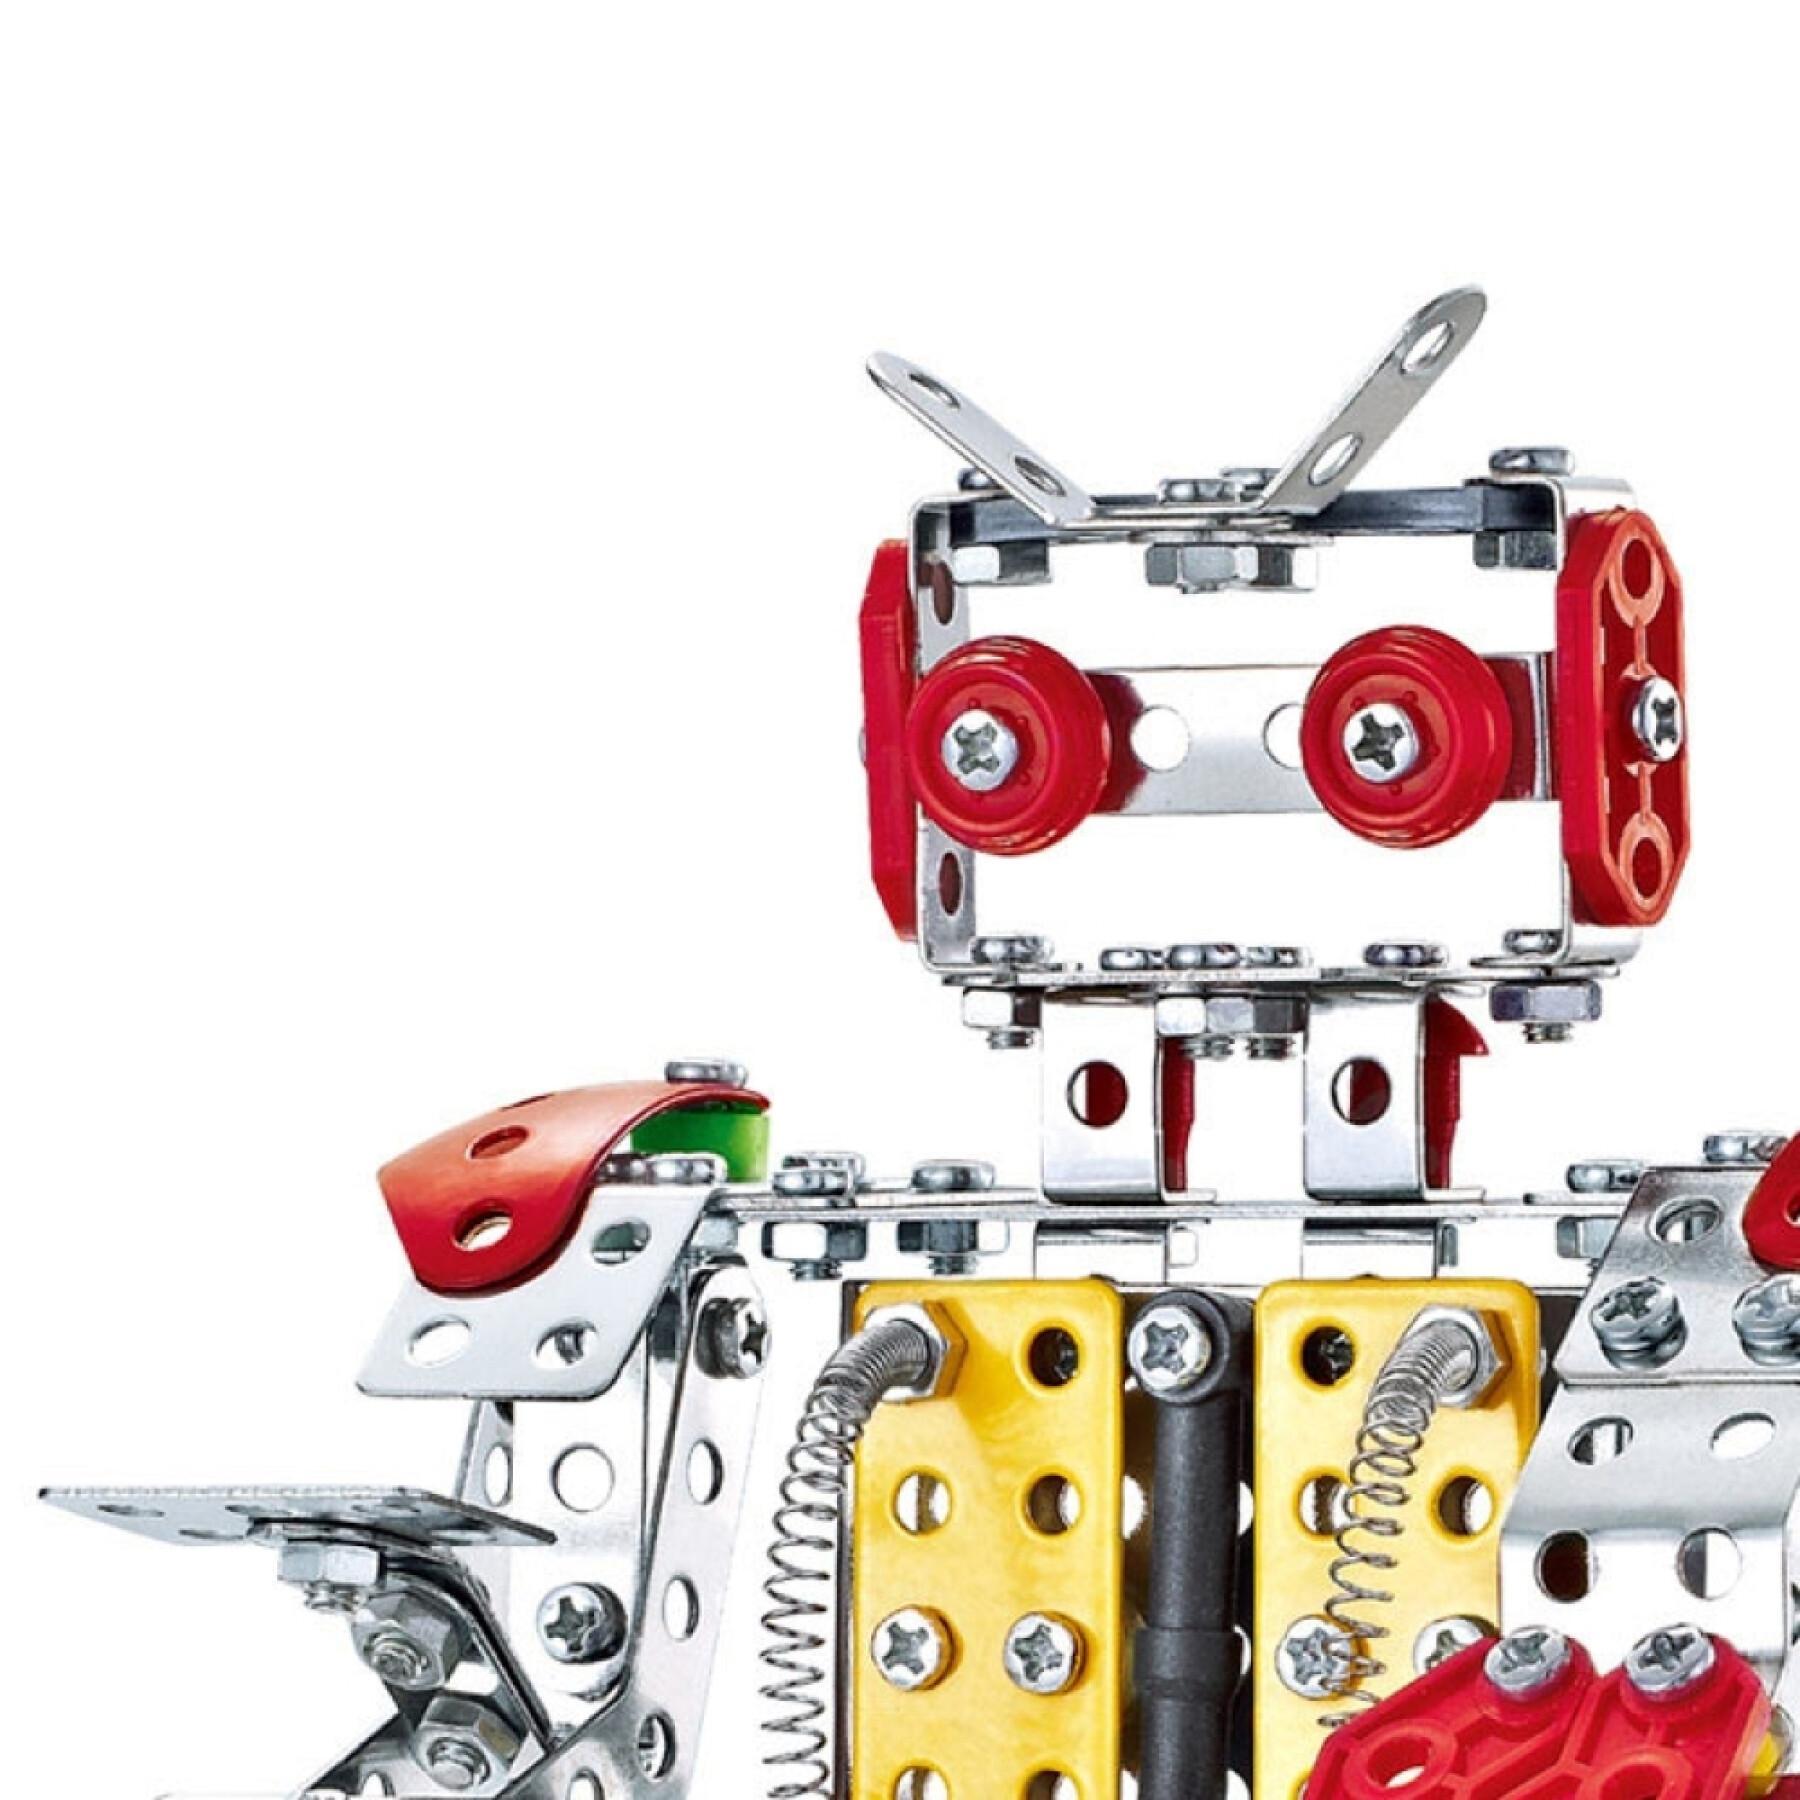 Juego de construcción metálico 262 piezas CB Toys Mecano Robot